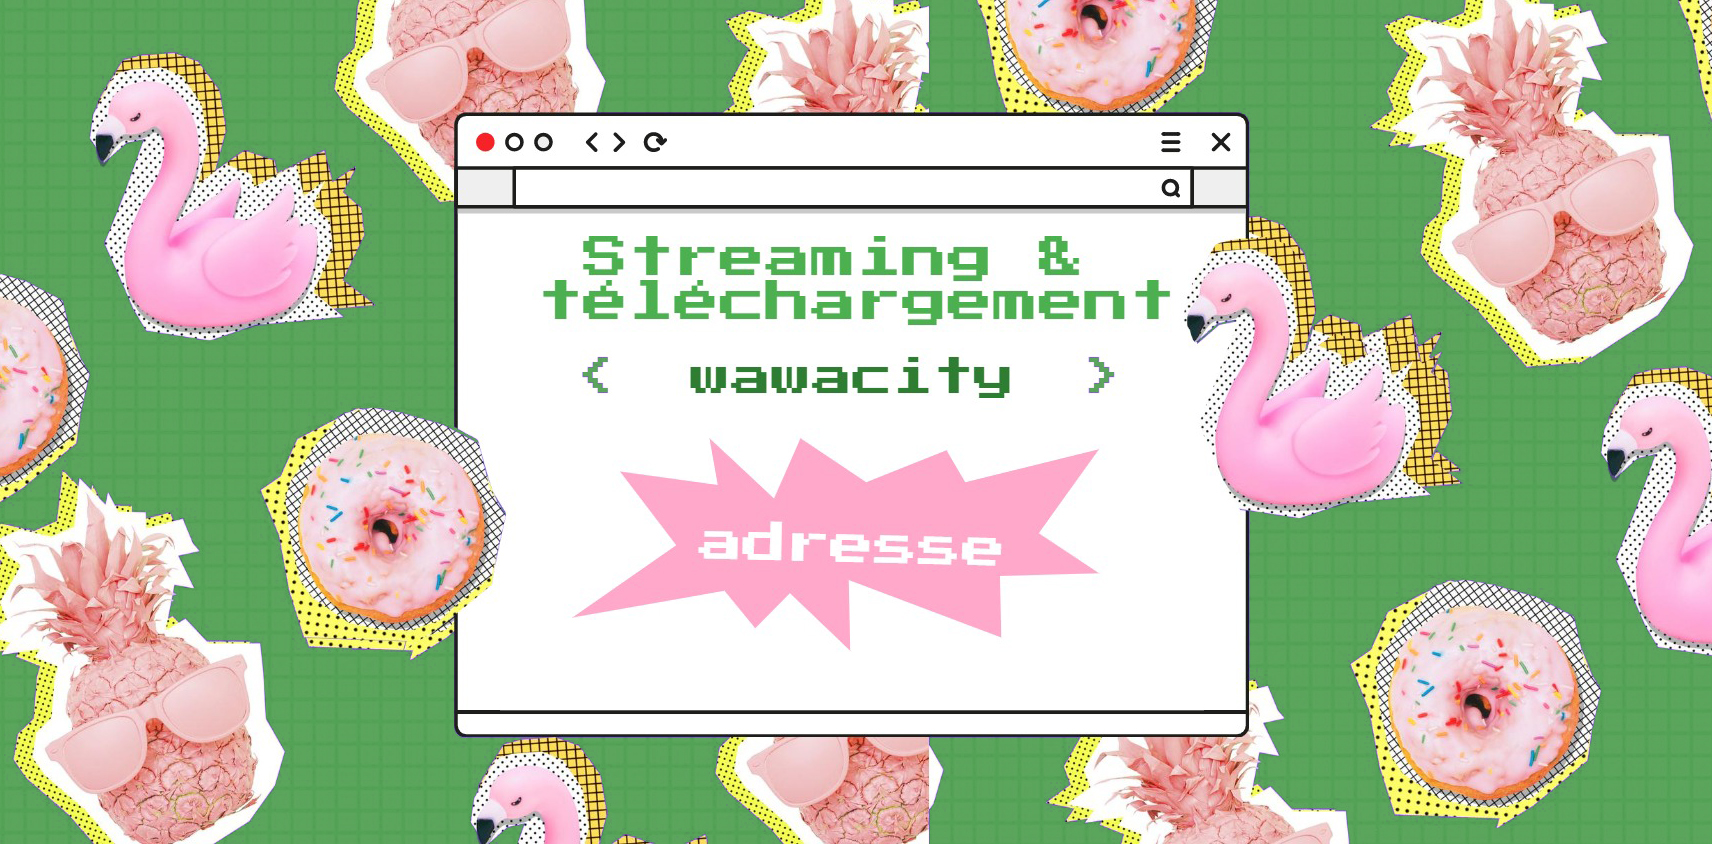 Wawacity: Hic est Novae Download Free Online Oratio Sursum-ut-date et Operationis